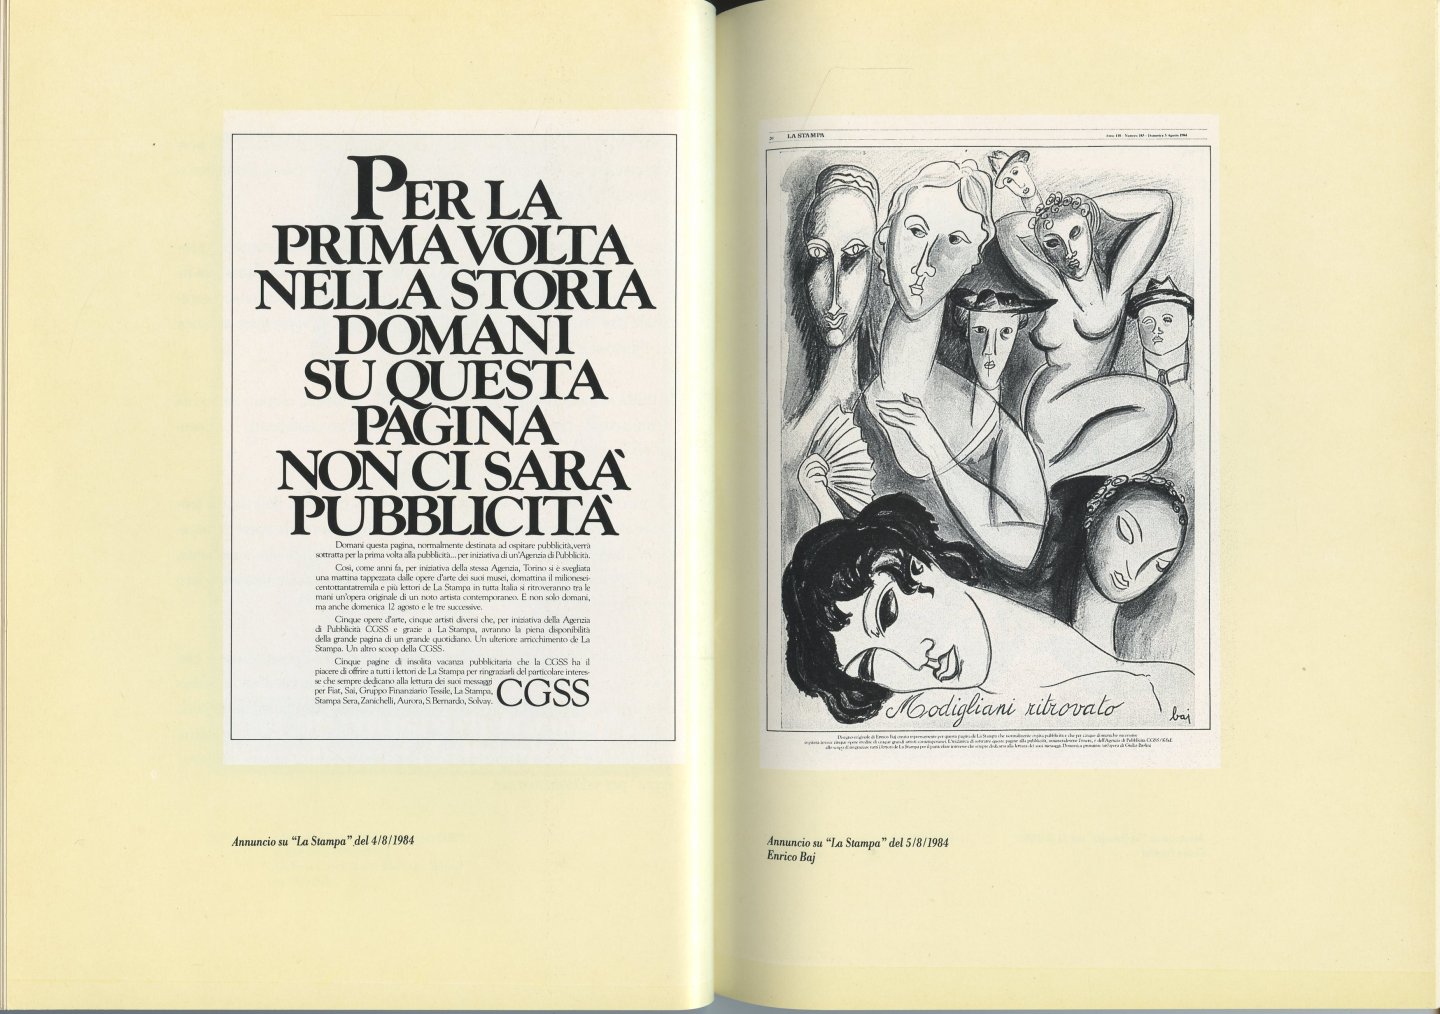 Dorfles, Gillo (Testo) - C.G.S.S. 1968/1987. L'Arte della Pubblicità